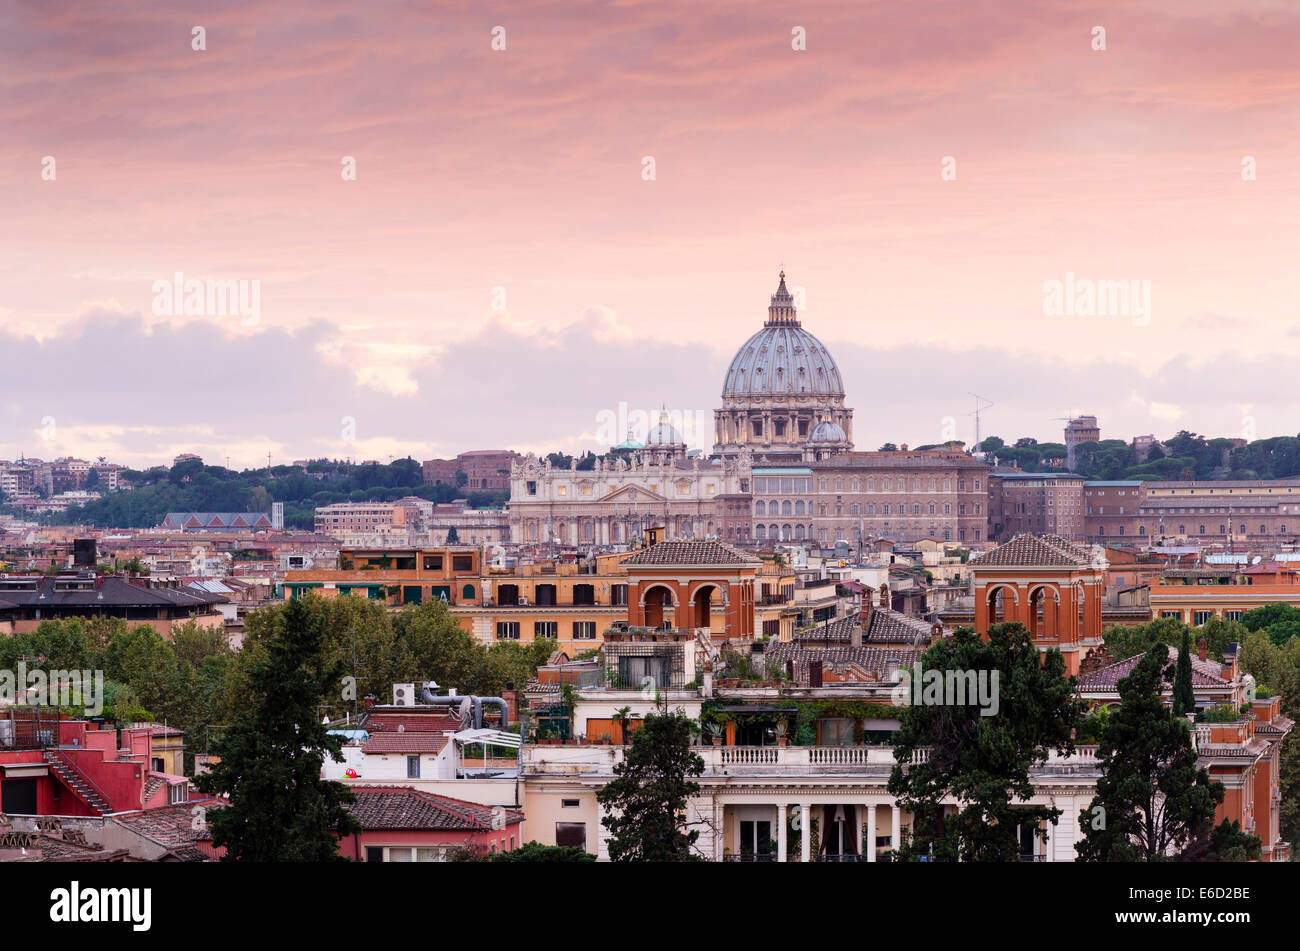 Vista desde el Pincio de la Basílica de San Pedro, el Vaticano, Roma, Lazio, Italia Foto de stock